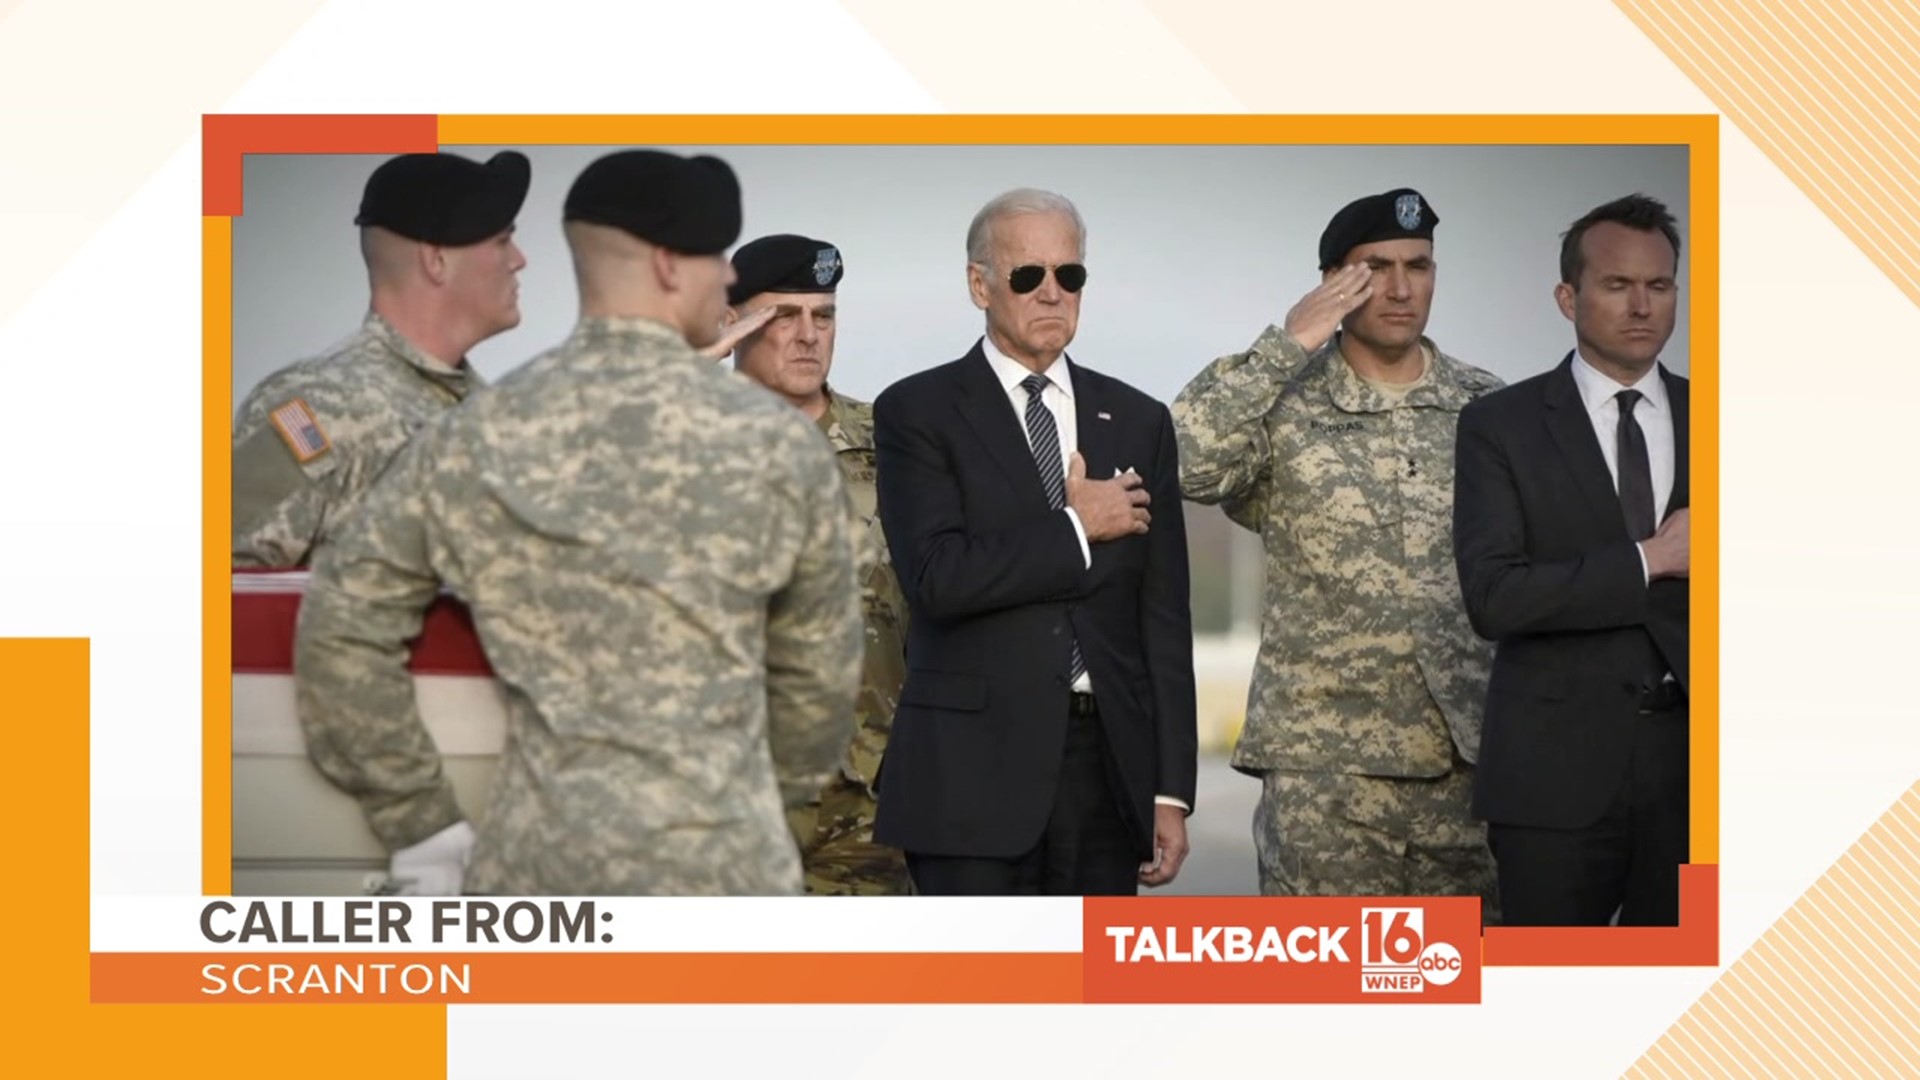 A caller from Scranton praises President Biden for ending the war in Afghanistan.